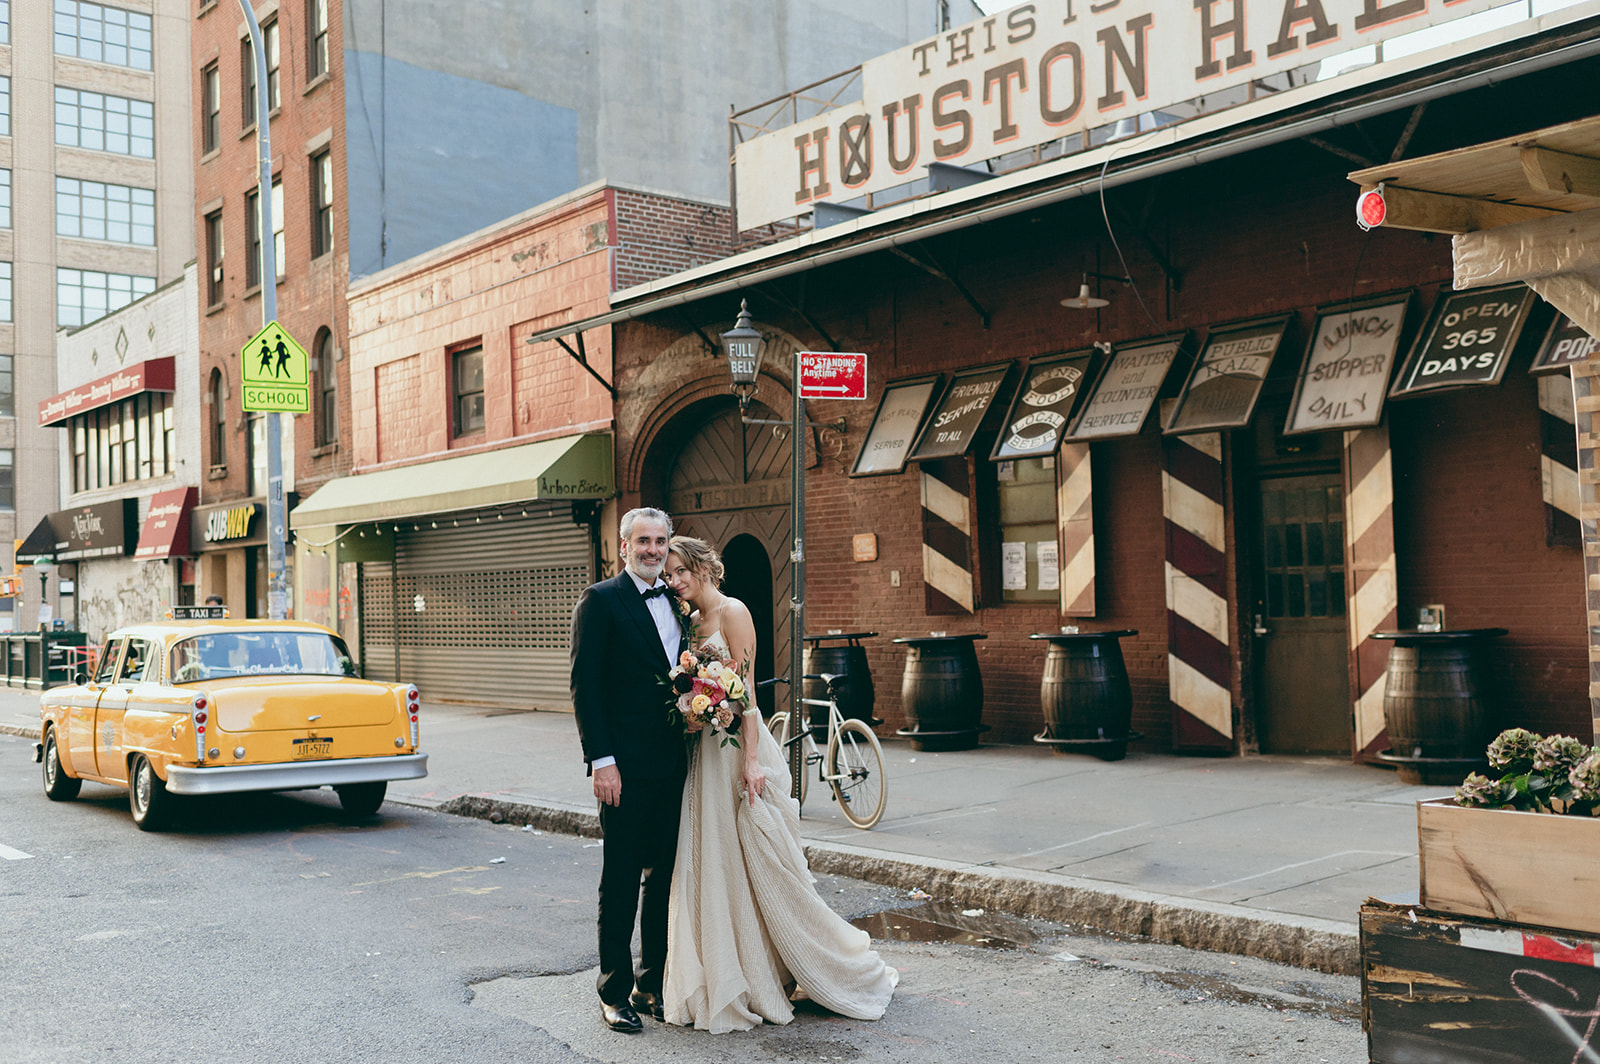 Houston Hall Wedding